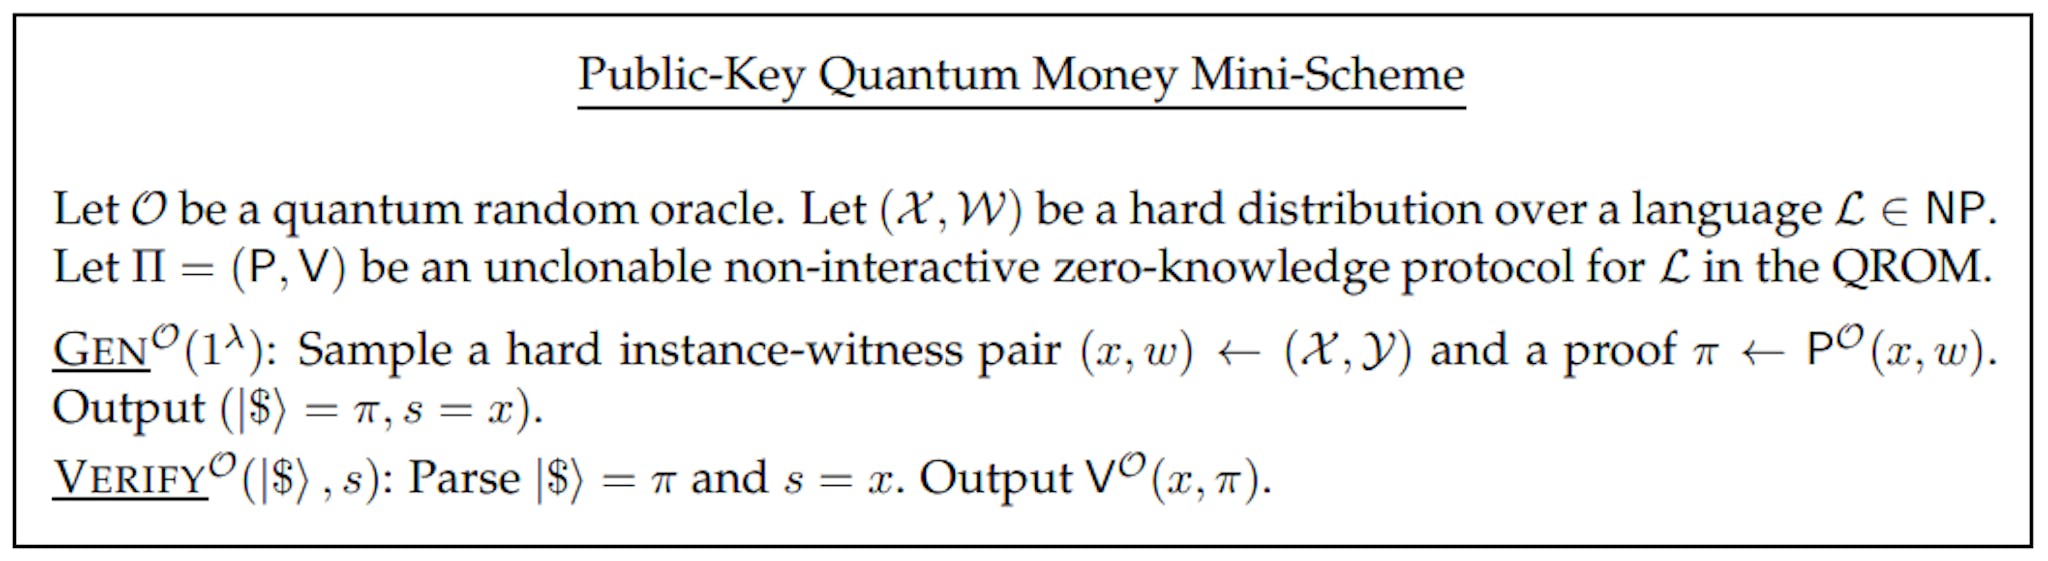 Figura 4: Miniesquema de dinheiro quântico de chave pública de um protocolo quântico não interativo não clonável